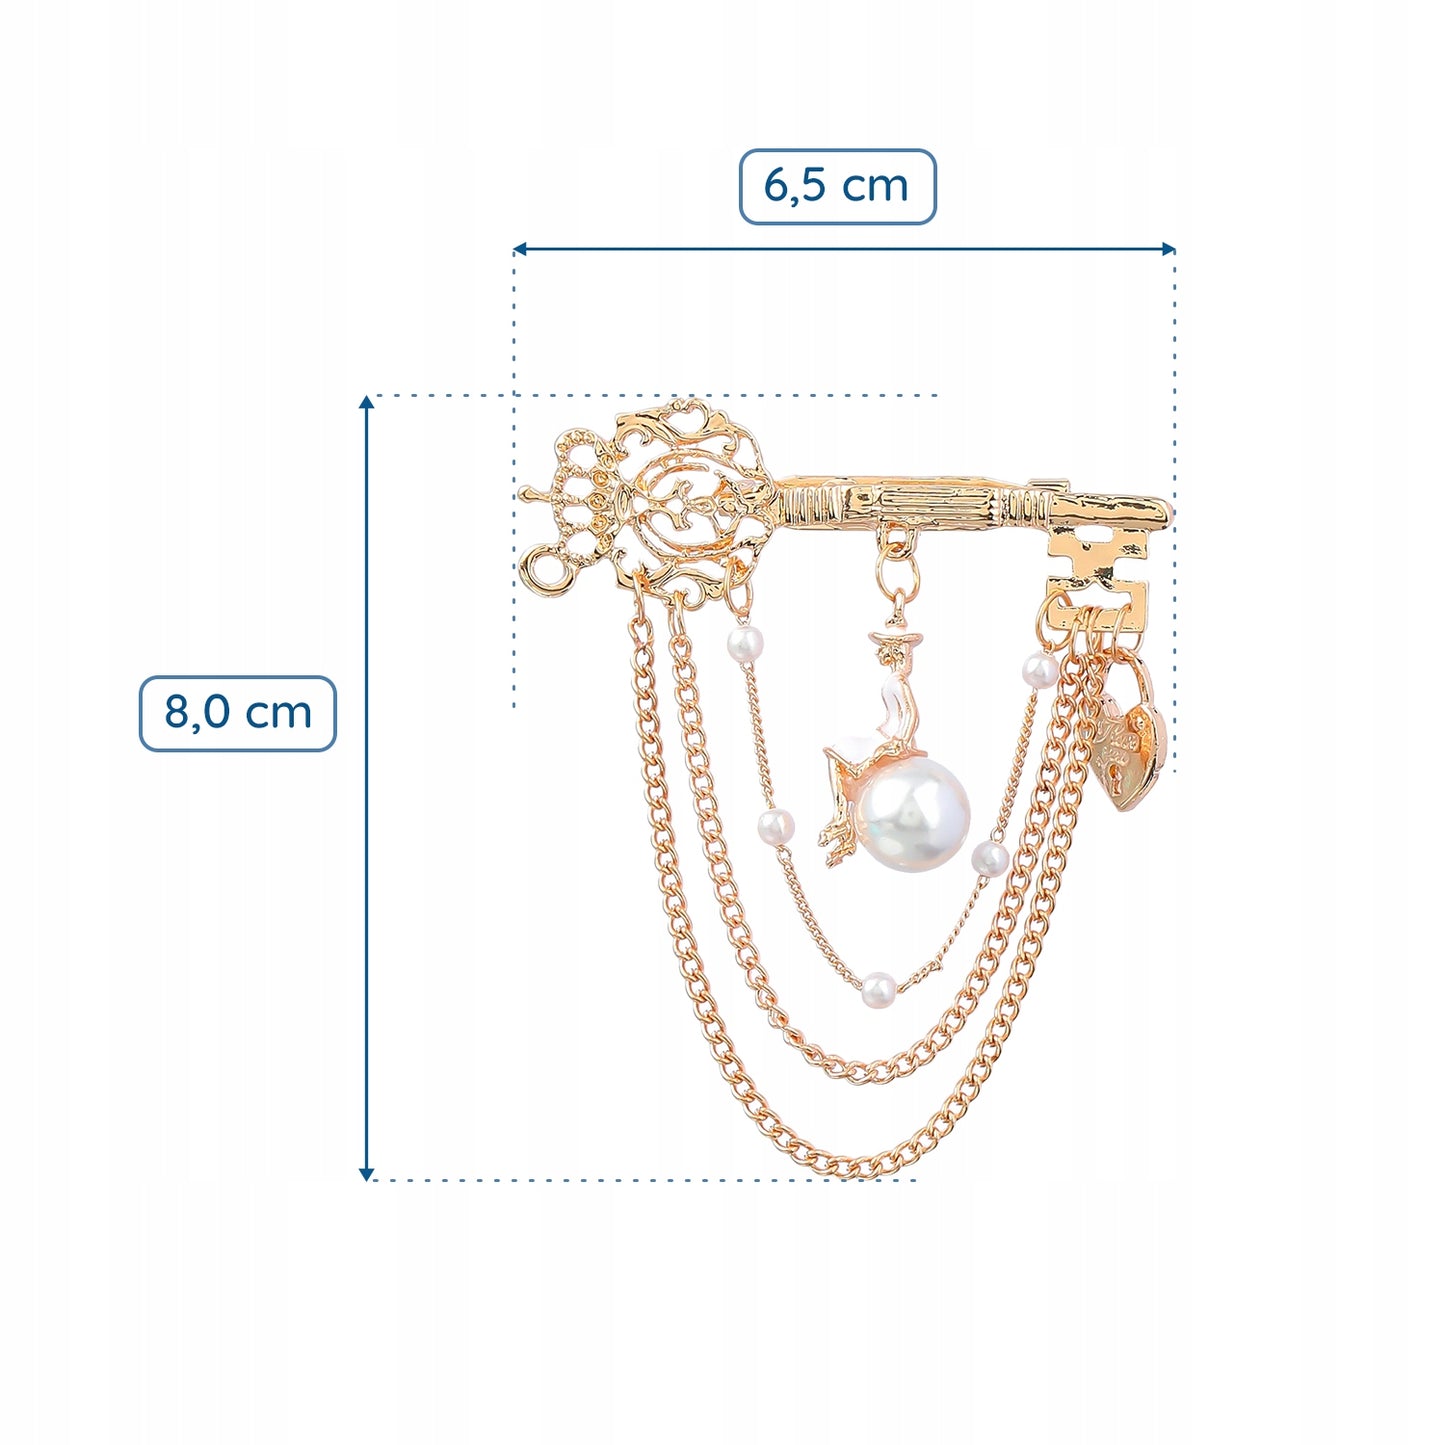 Agrafka - złota broszka z łańcuszkami, kluczem, kłódką i kobietą